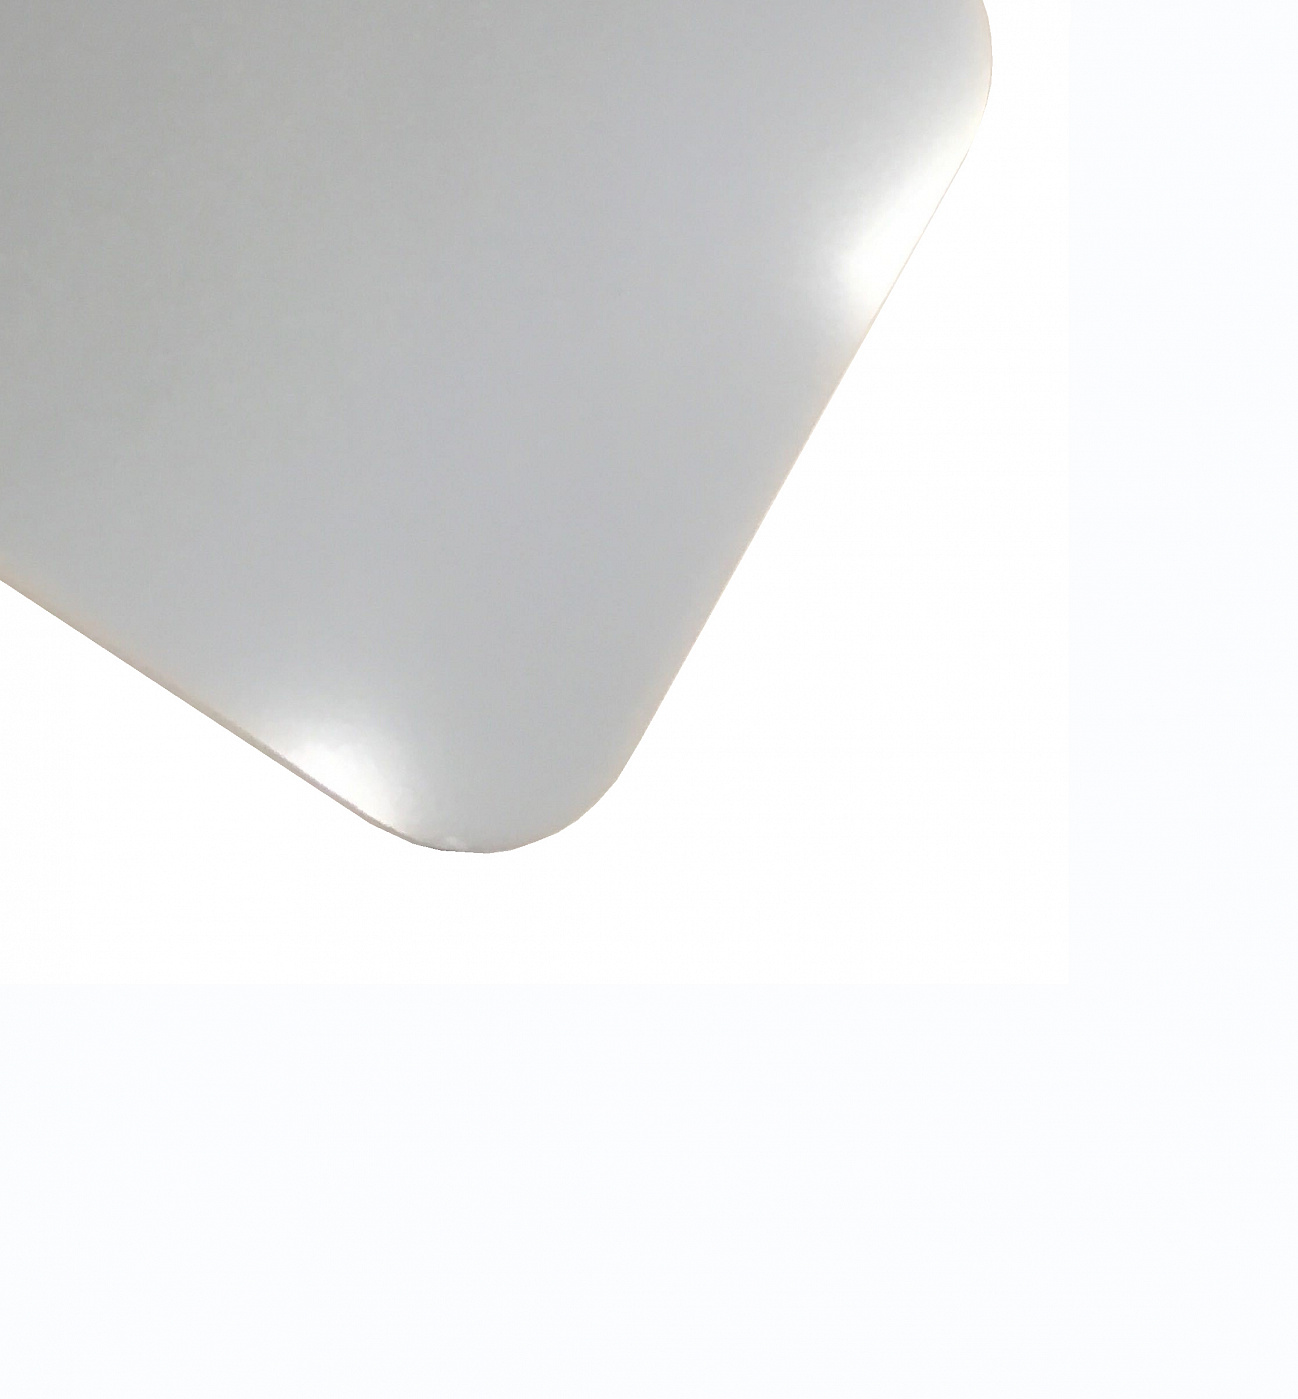 Планшет для пленэра из оргстекла 3 мм, под лист размера А4, цвет белый Dec-9082016